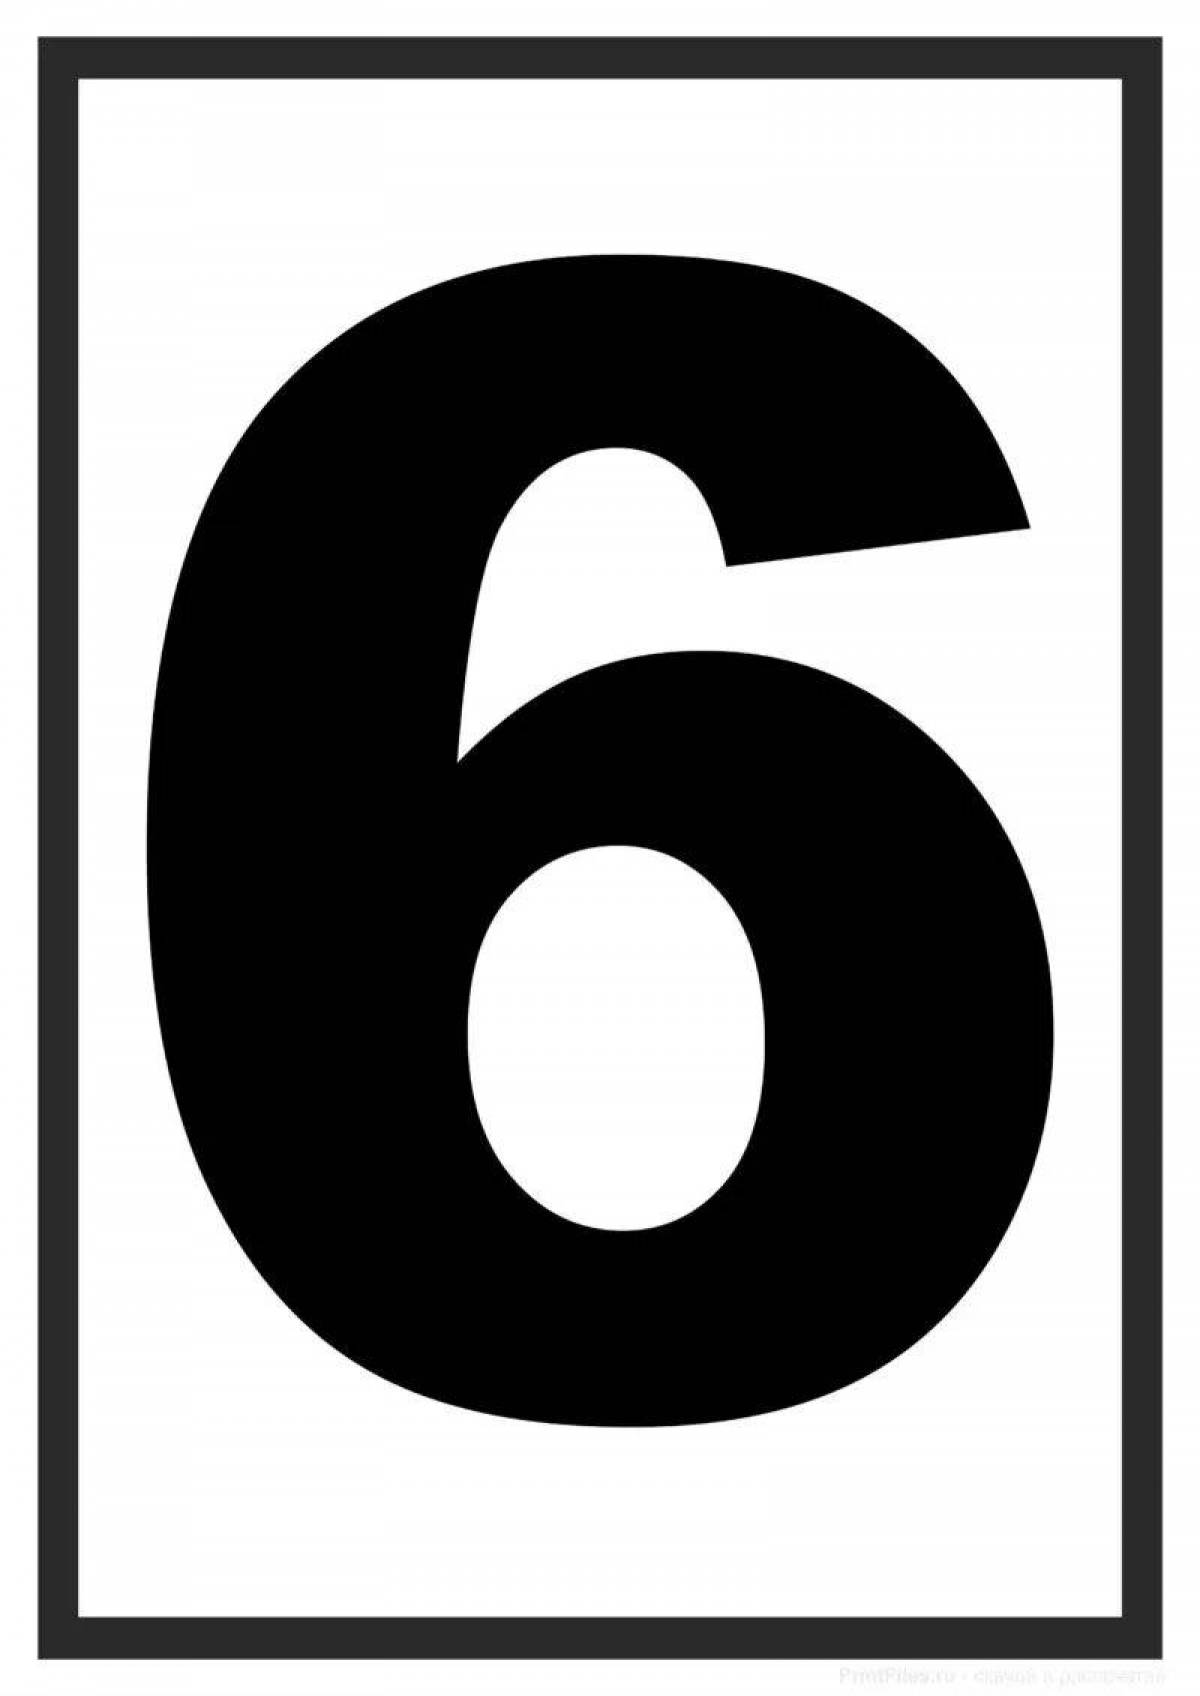 5 6 #4